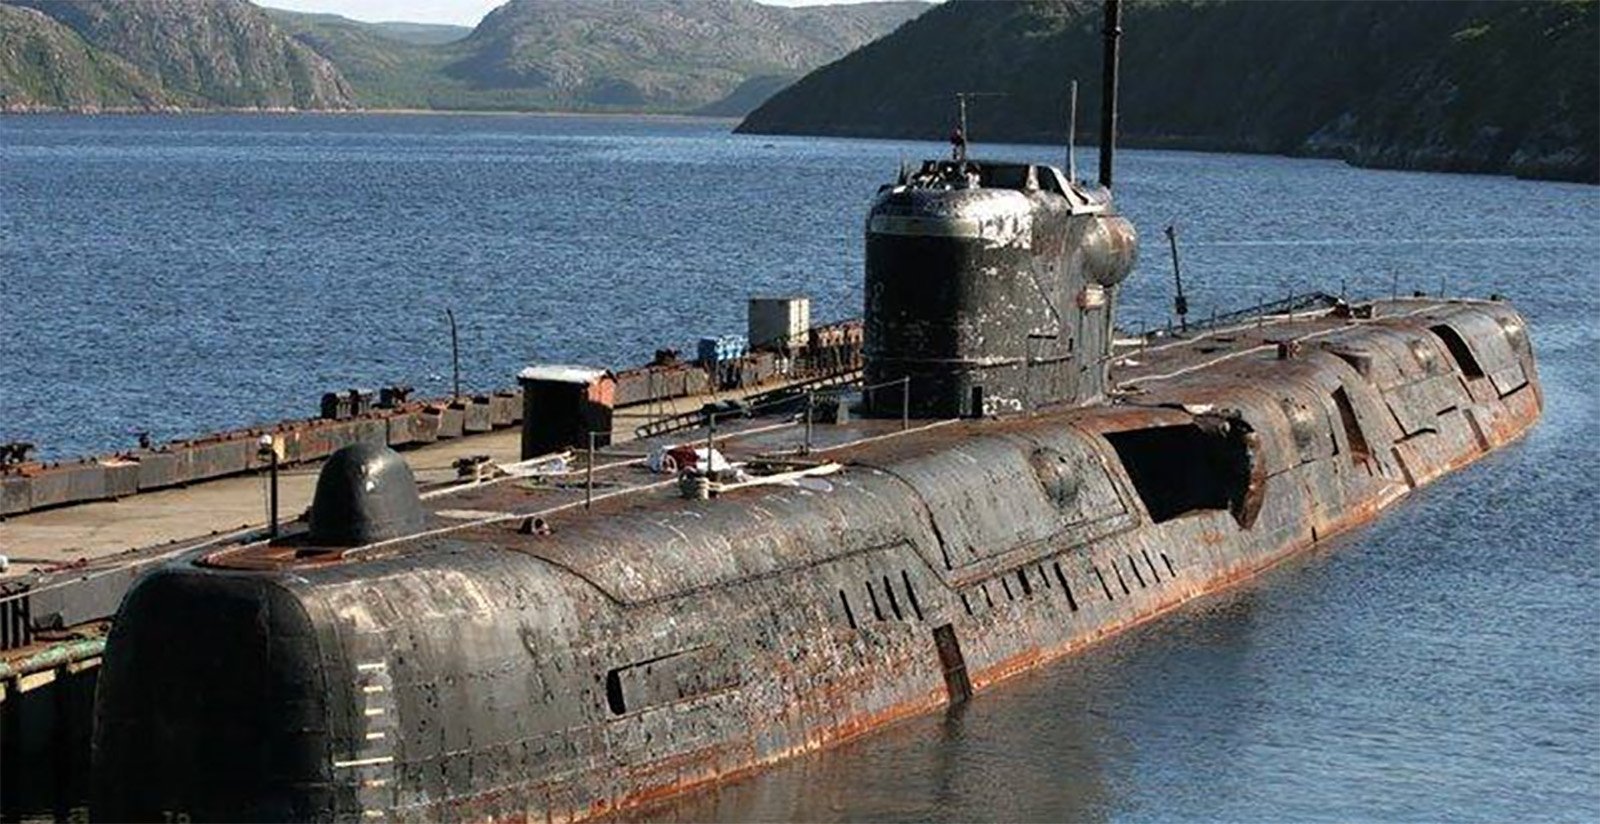 Пл пр т. Бухта Чажма Приморский край 1985. АПЛ К-431 В бухте Чажма. К-431 подводная лодка. Авария в бухте Чажма 10 августа 1985.